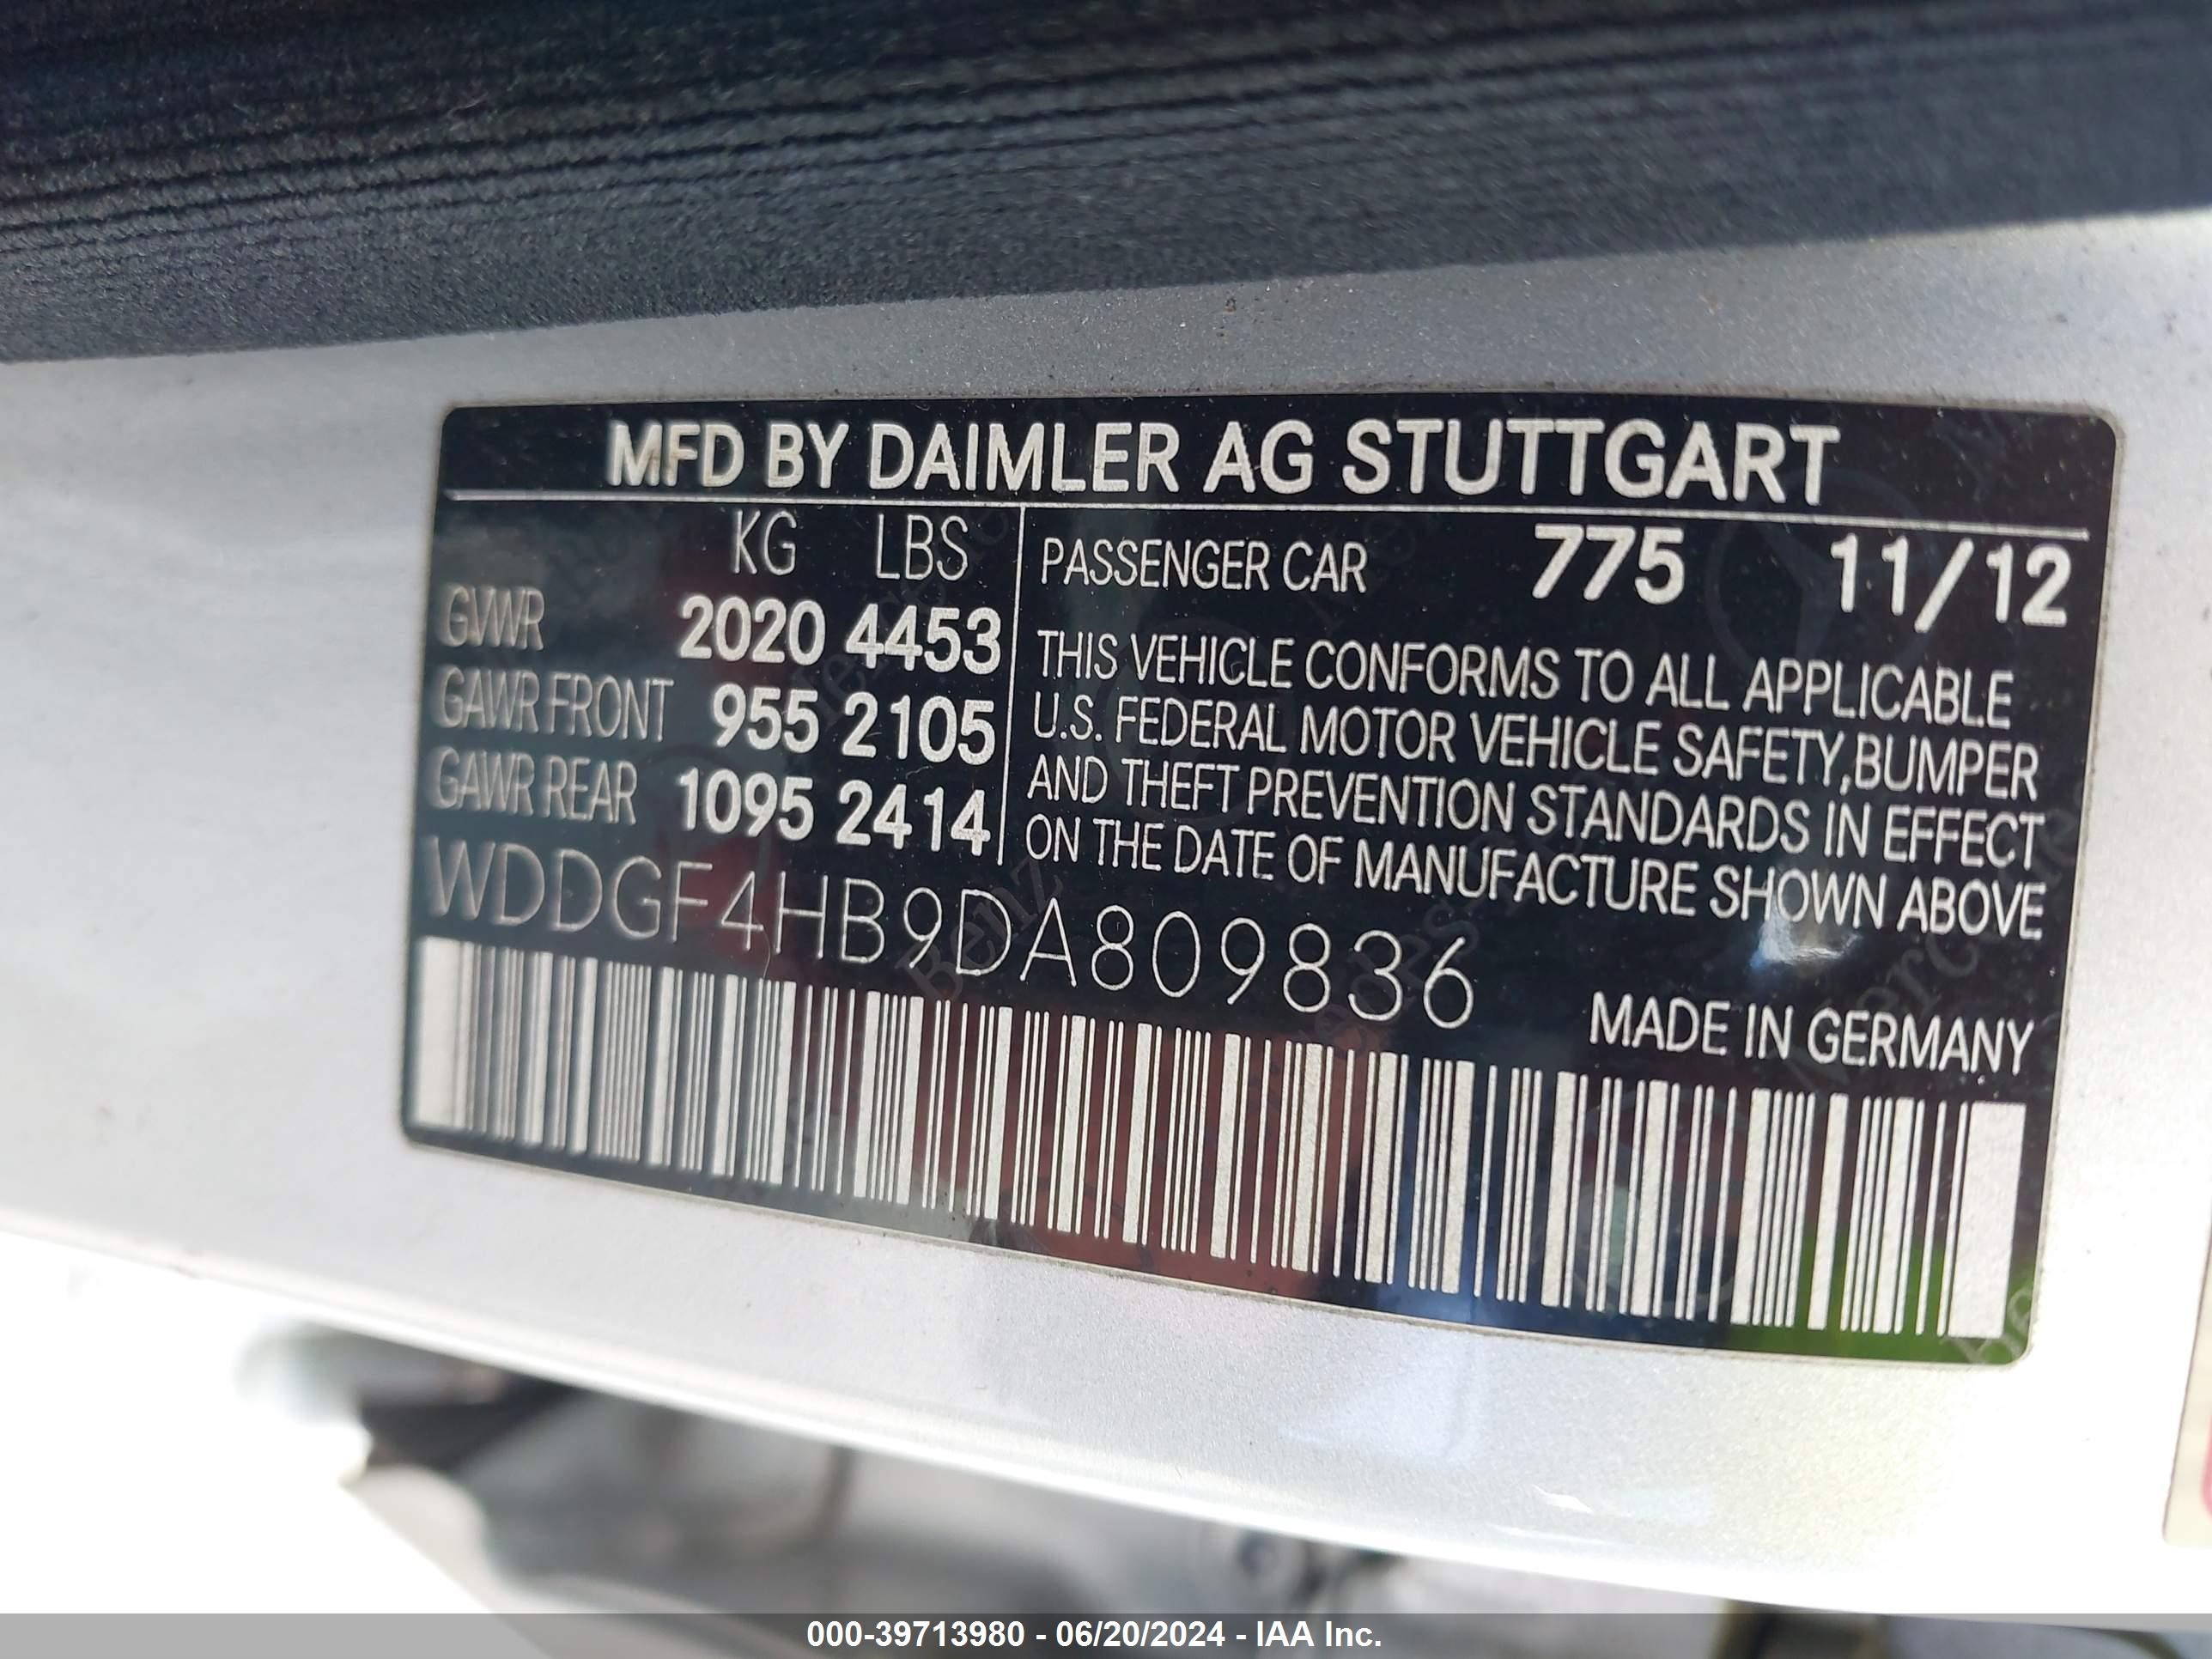 2013 Mercedes-Benz C 250 Luxury/Sport vin: WDDGF4HB9DA809836